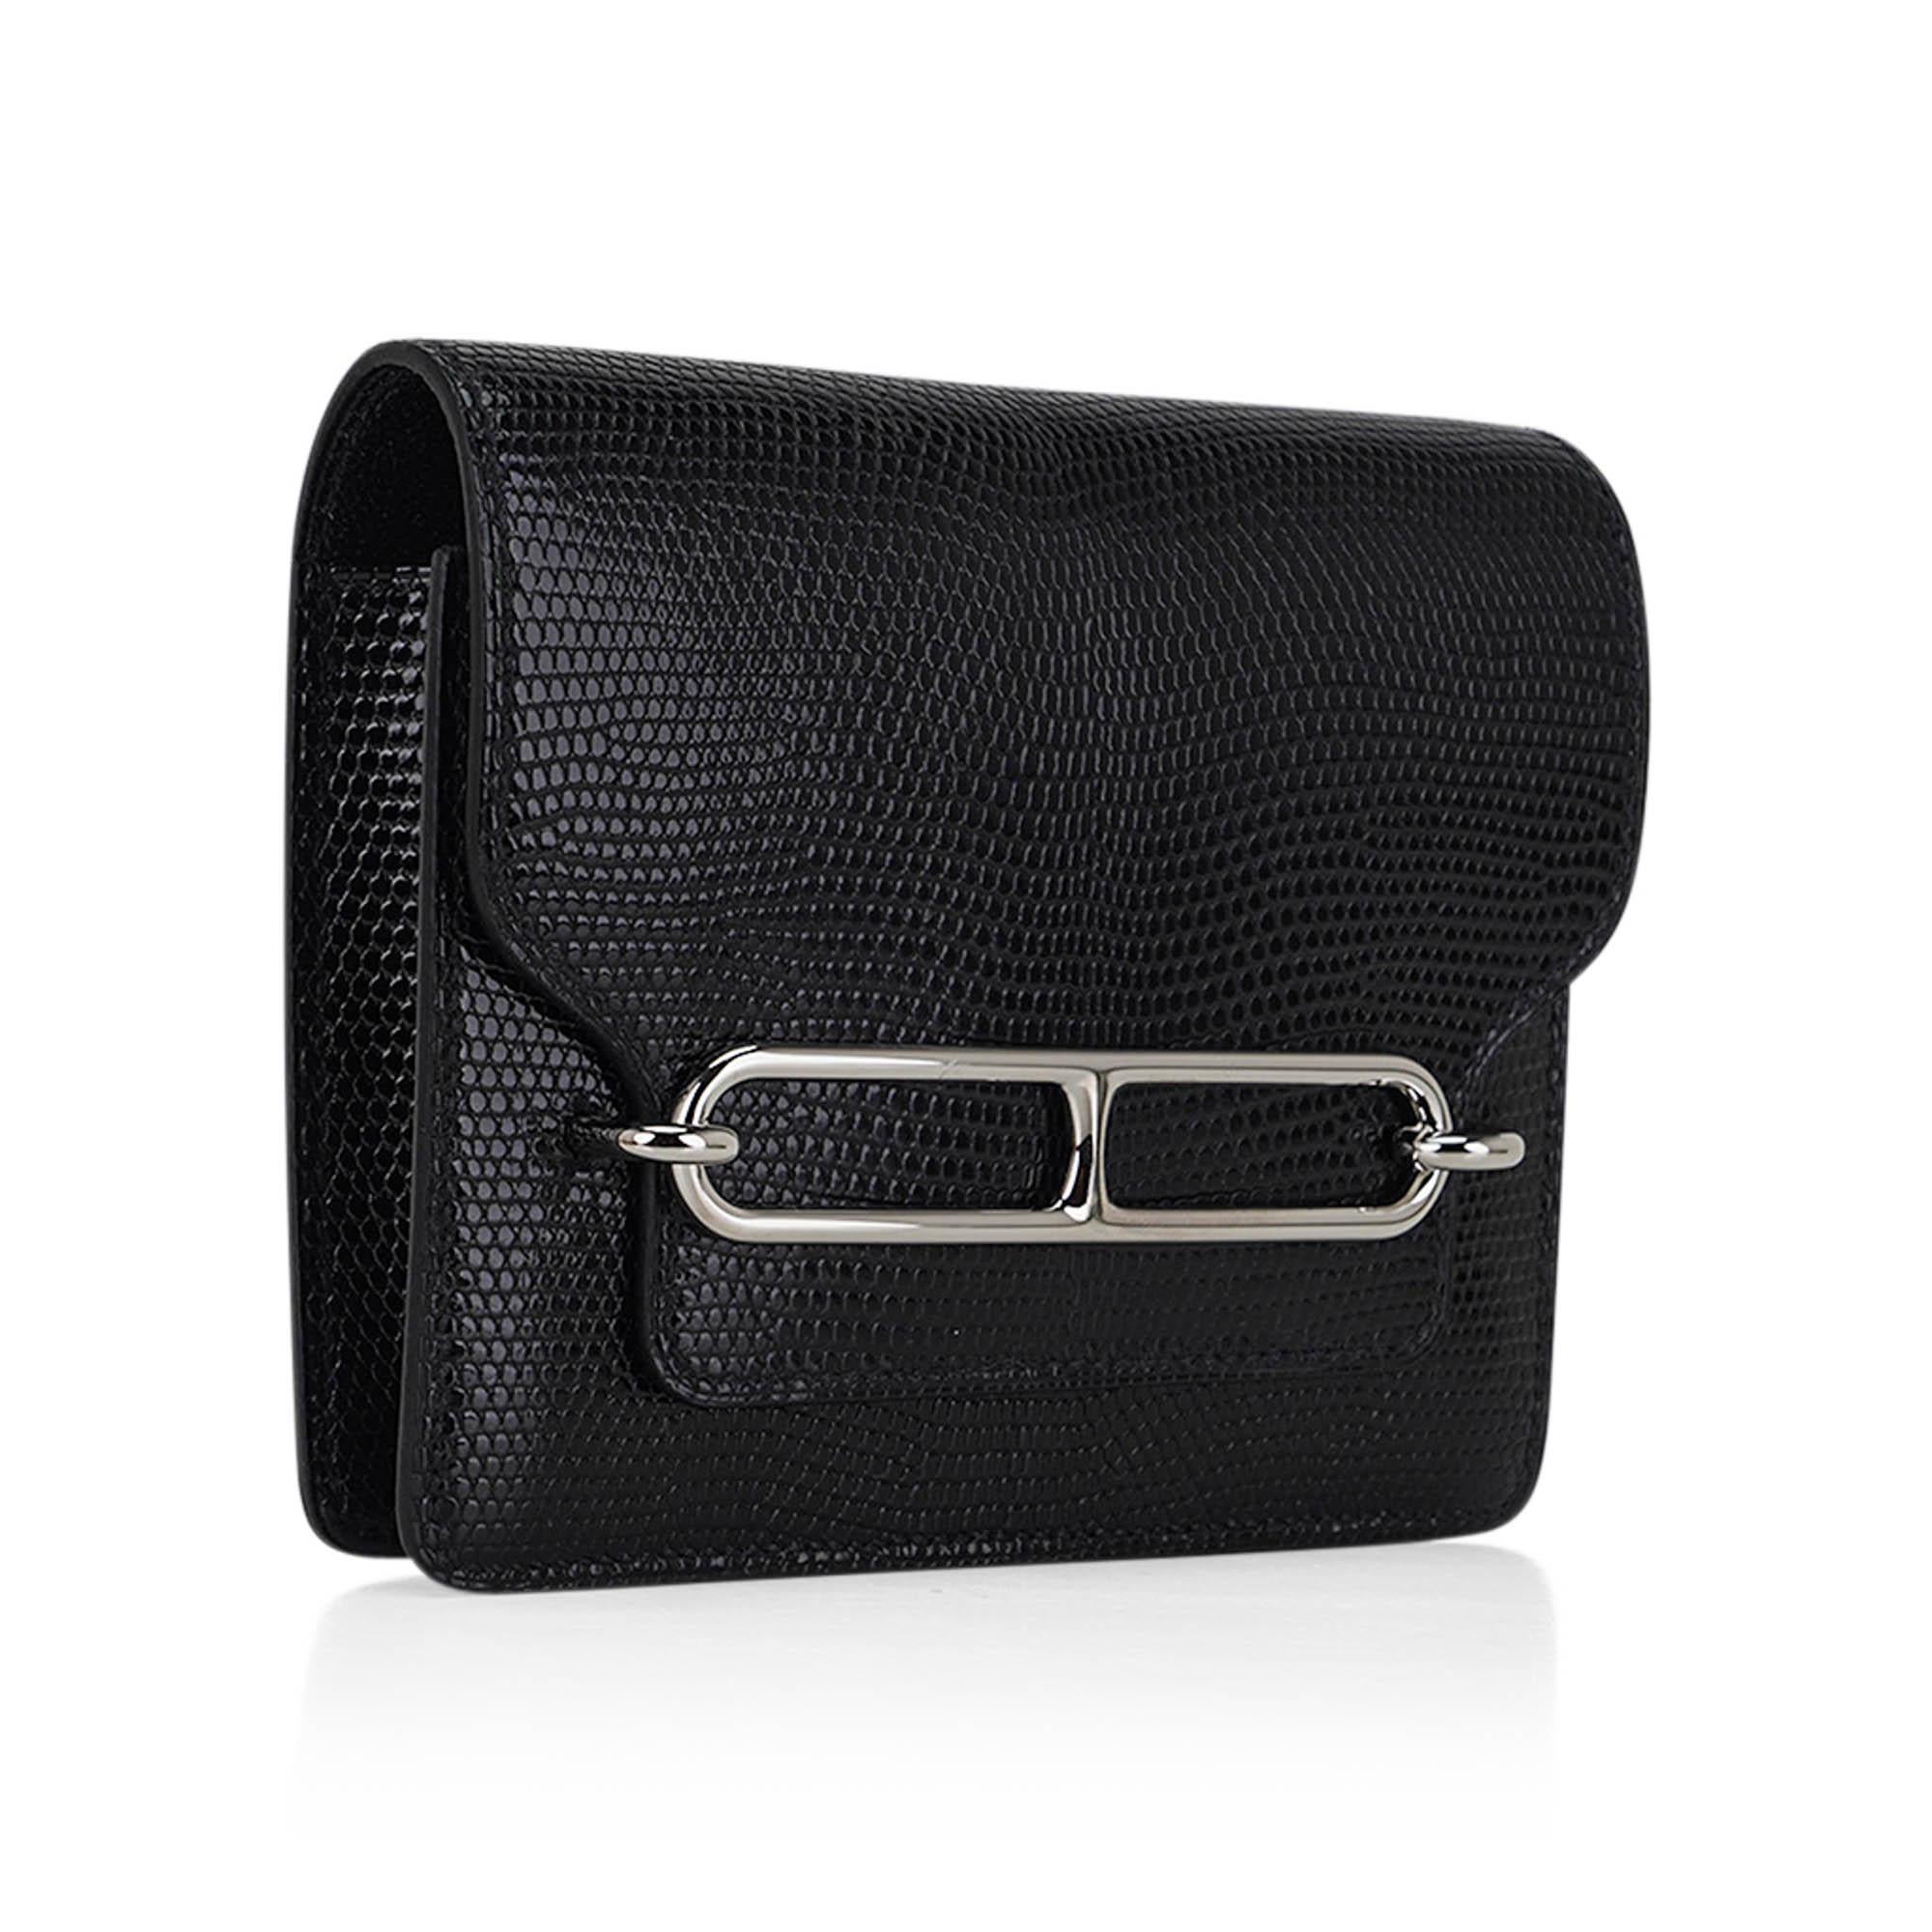 Mightychic bietet eine Hermes Roulis Slim Wallet Belt Tasche in Black Lizard.
Elegant und knackig mit Palladium-Beschlägen.
Mit abnehmbarem Kleingeldfach mit Reißverschluss und 2 Kreditkartenfächern.
Passt bis zu einem 42-mm-Hermes-Gürtel.
Kommt mit